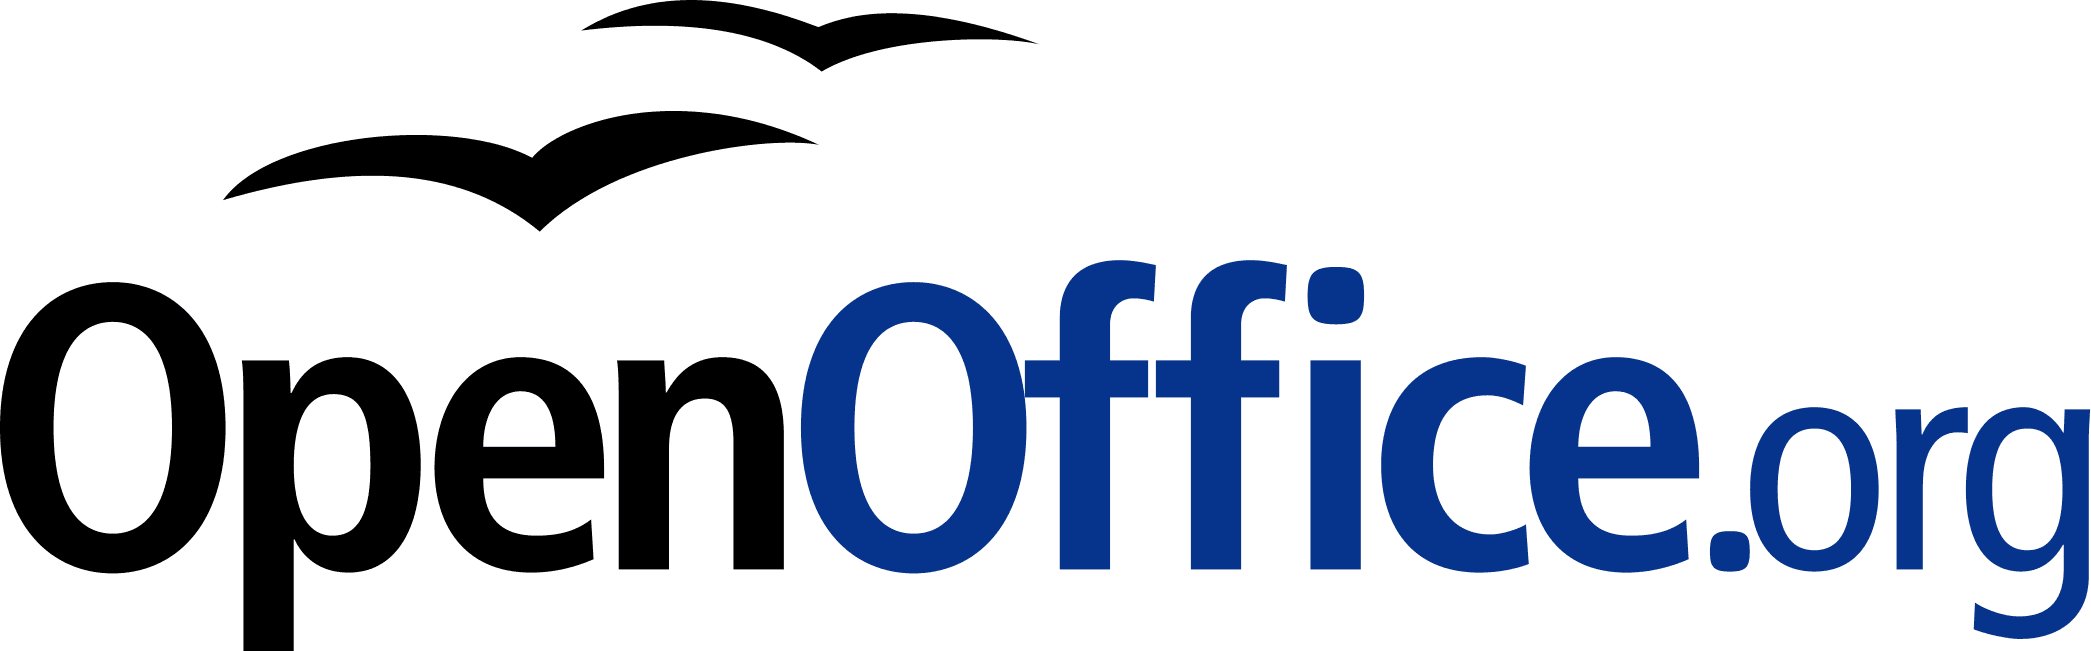 Apache Foundation oznámila 100 milionů stažení OpenOffice